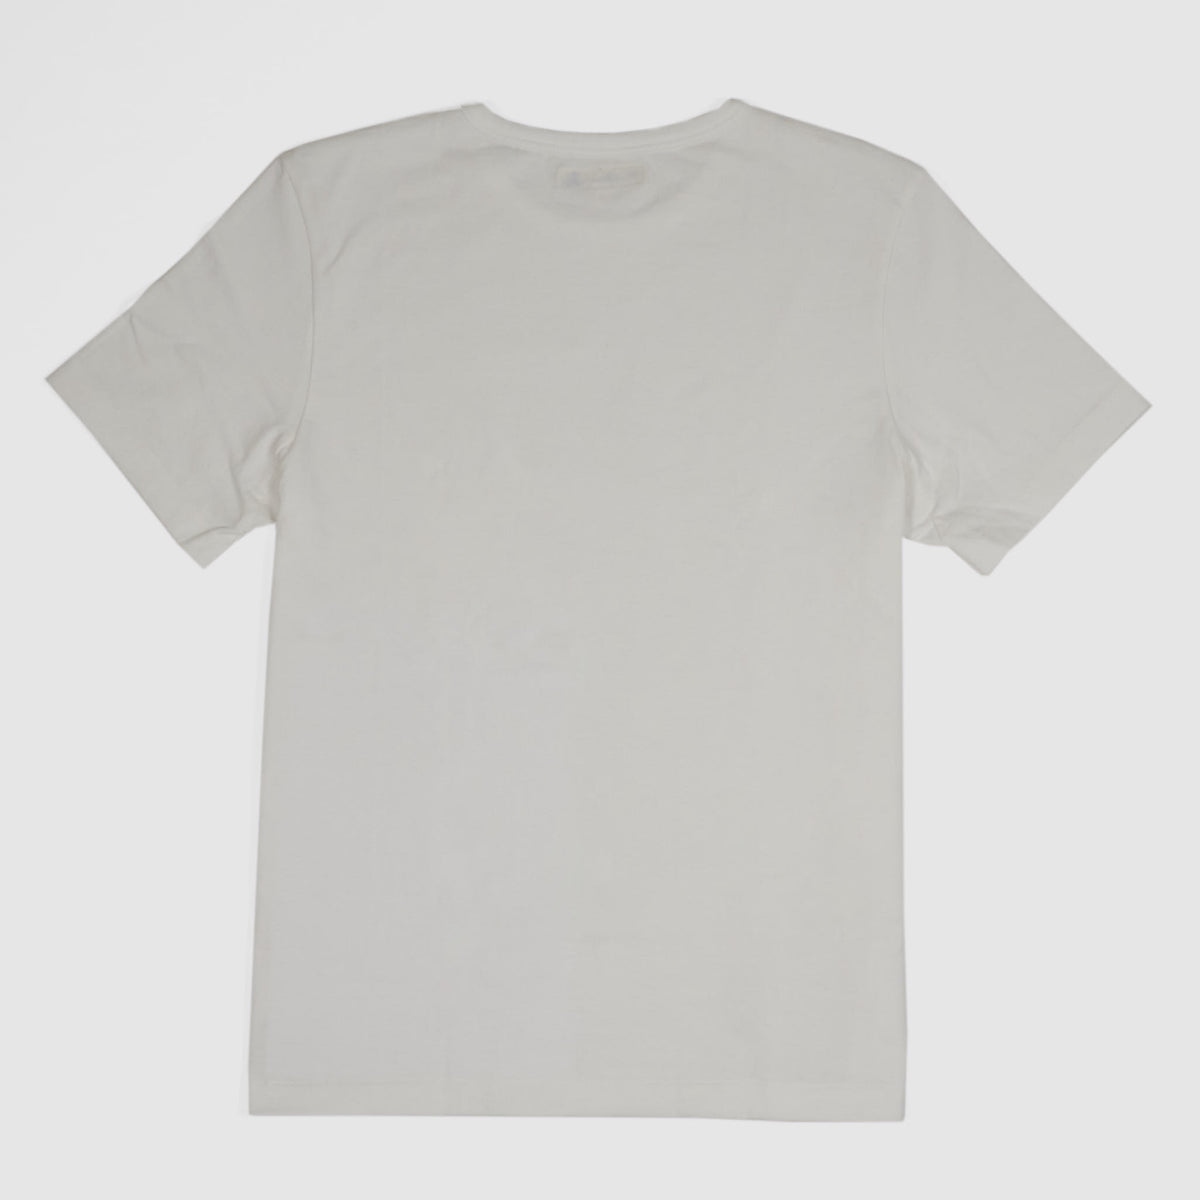 Merz b.Schwanen Soft Organic Cotton Loop Wheeler Short Sleeves T-ShirtWhite